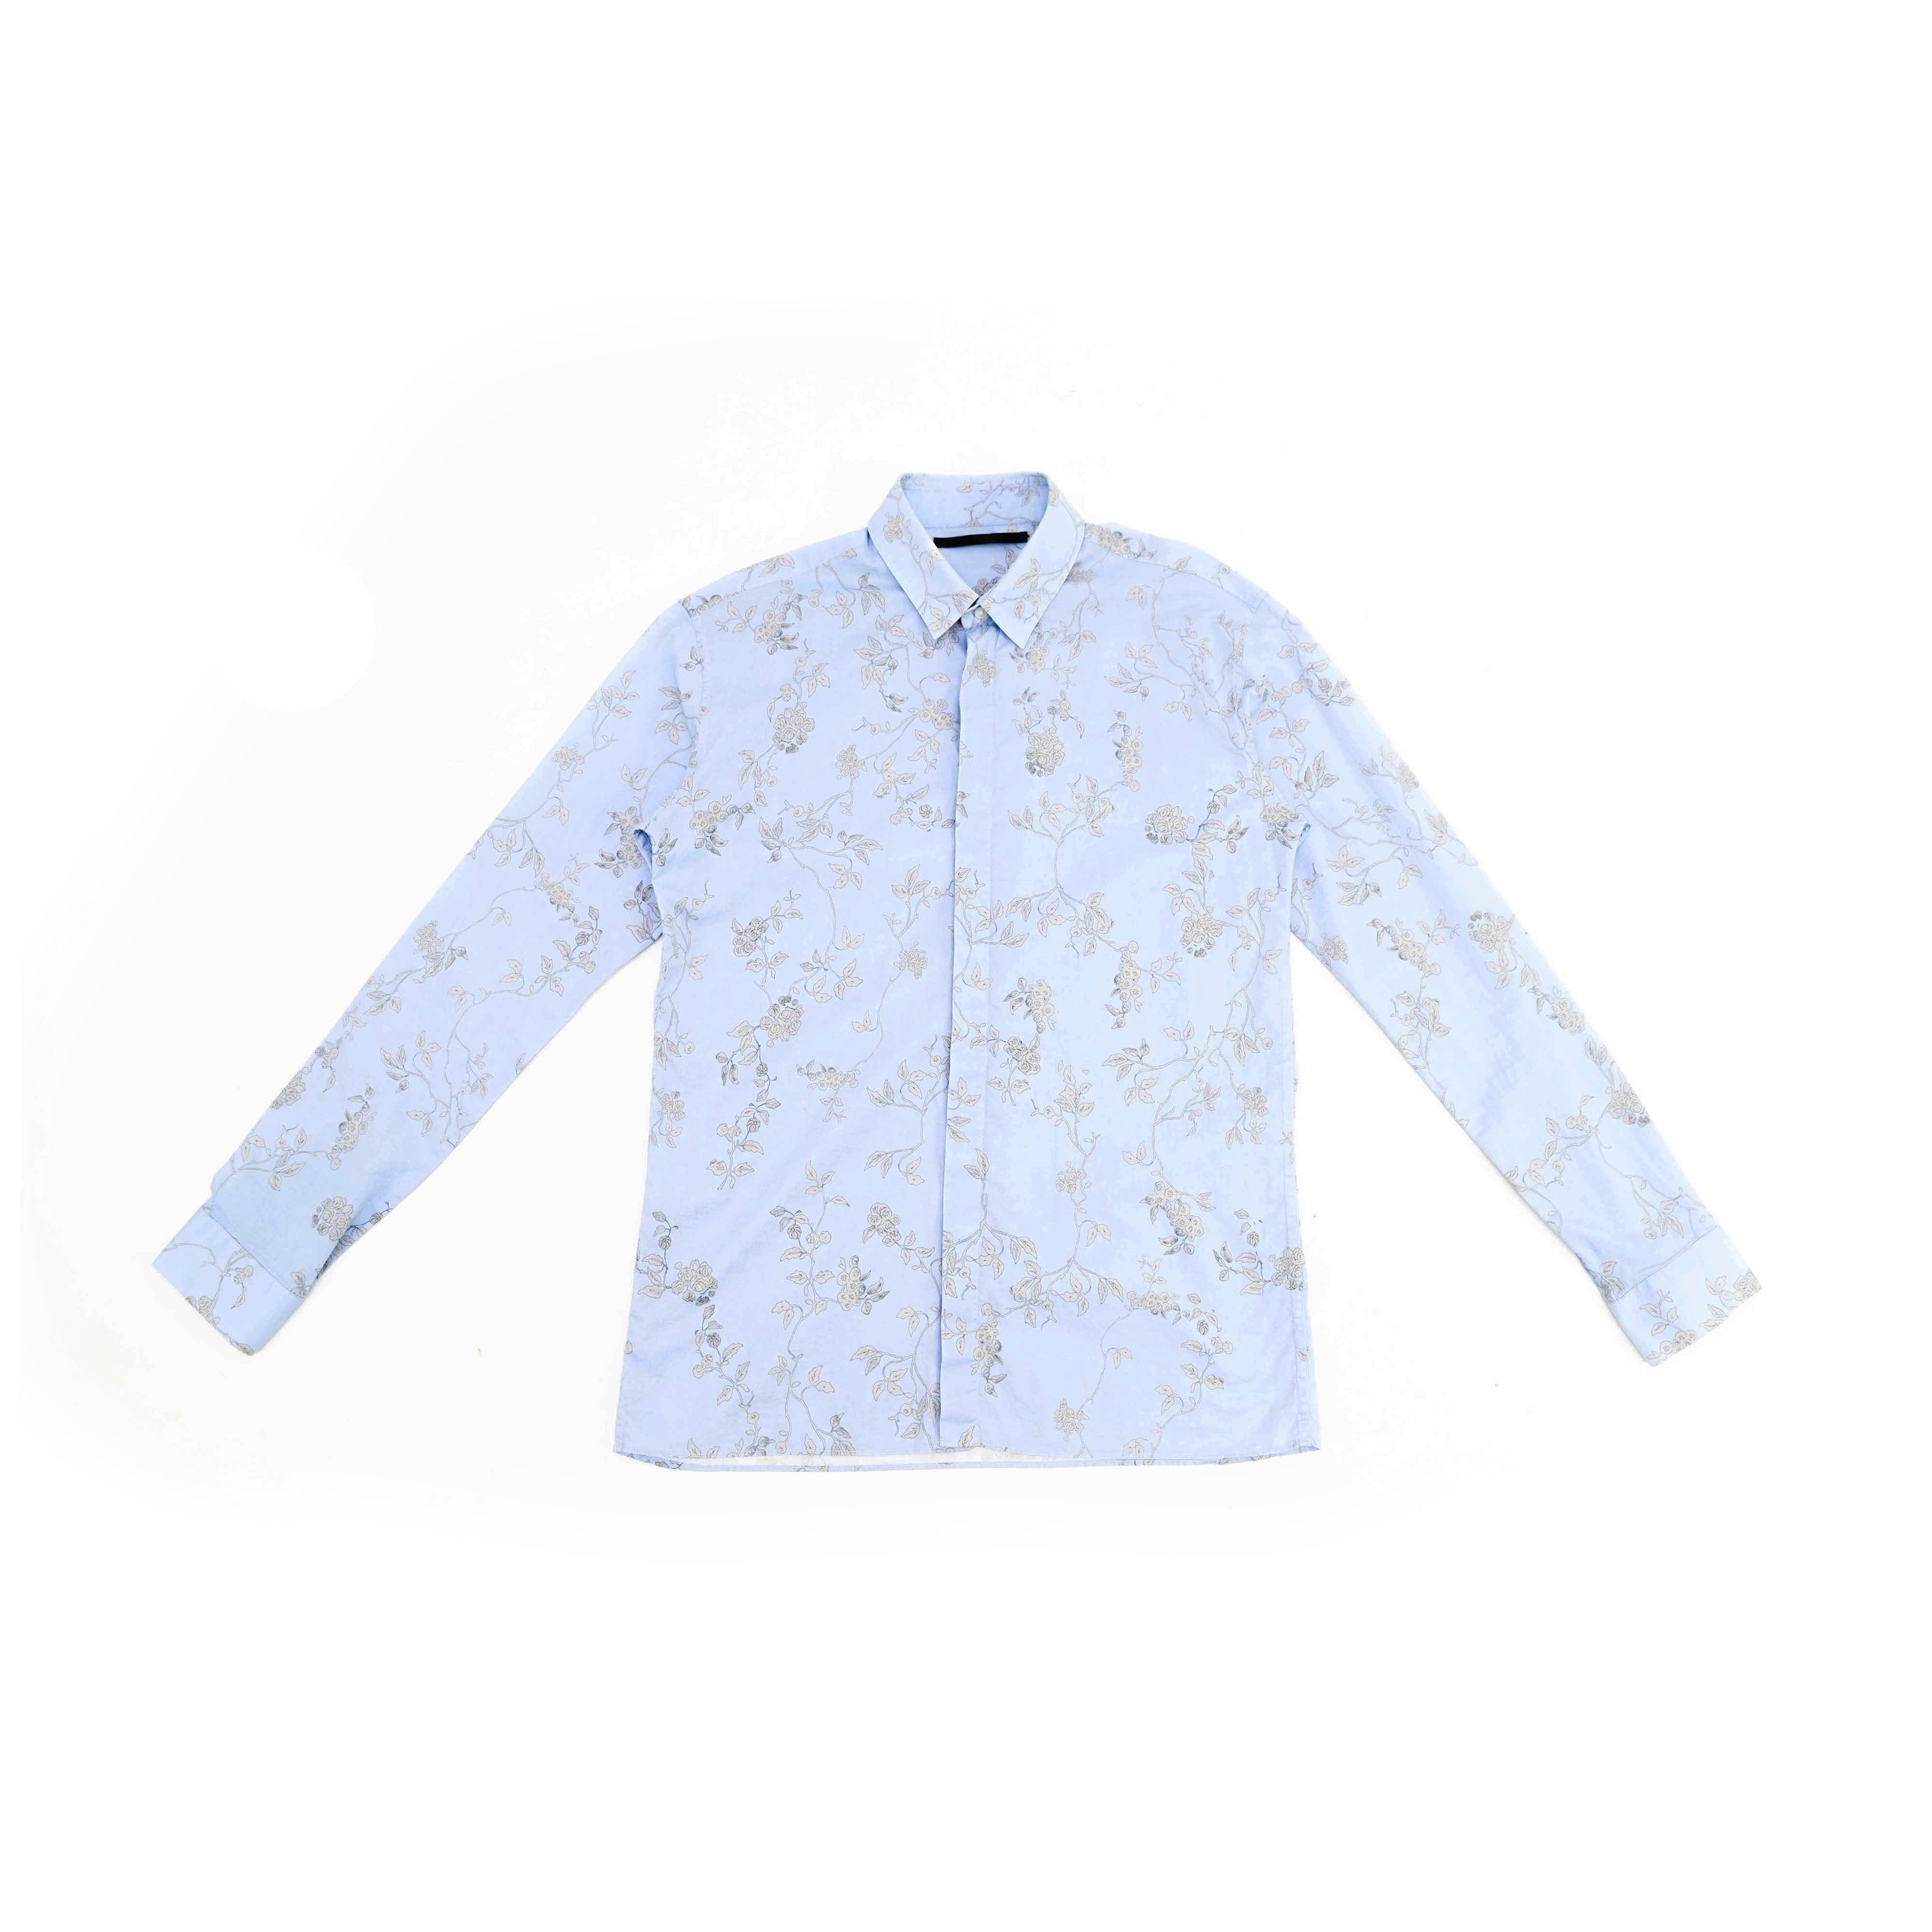 SS15 Light Blue Floral Shirt